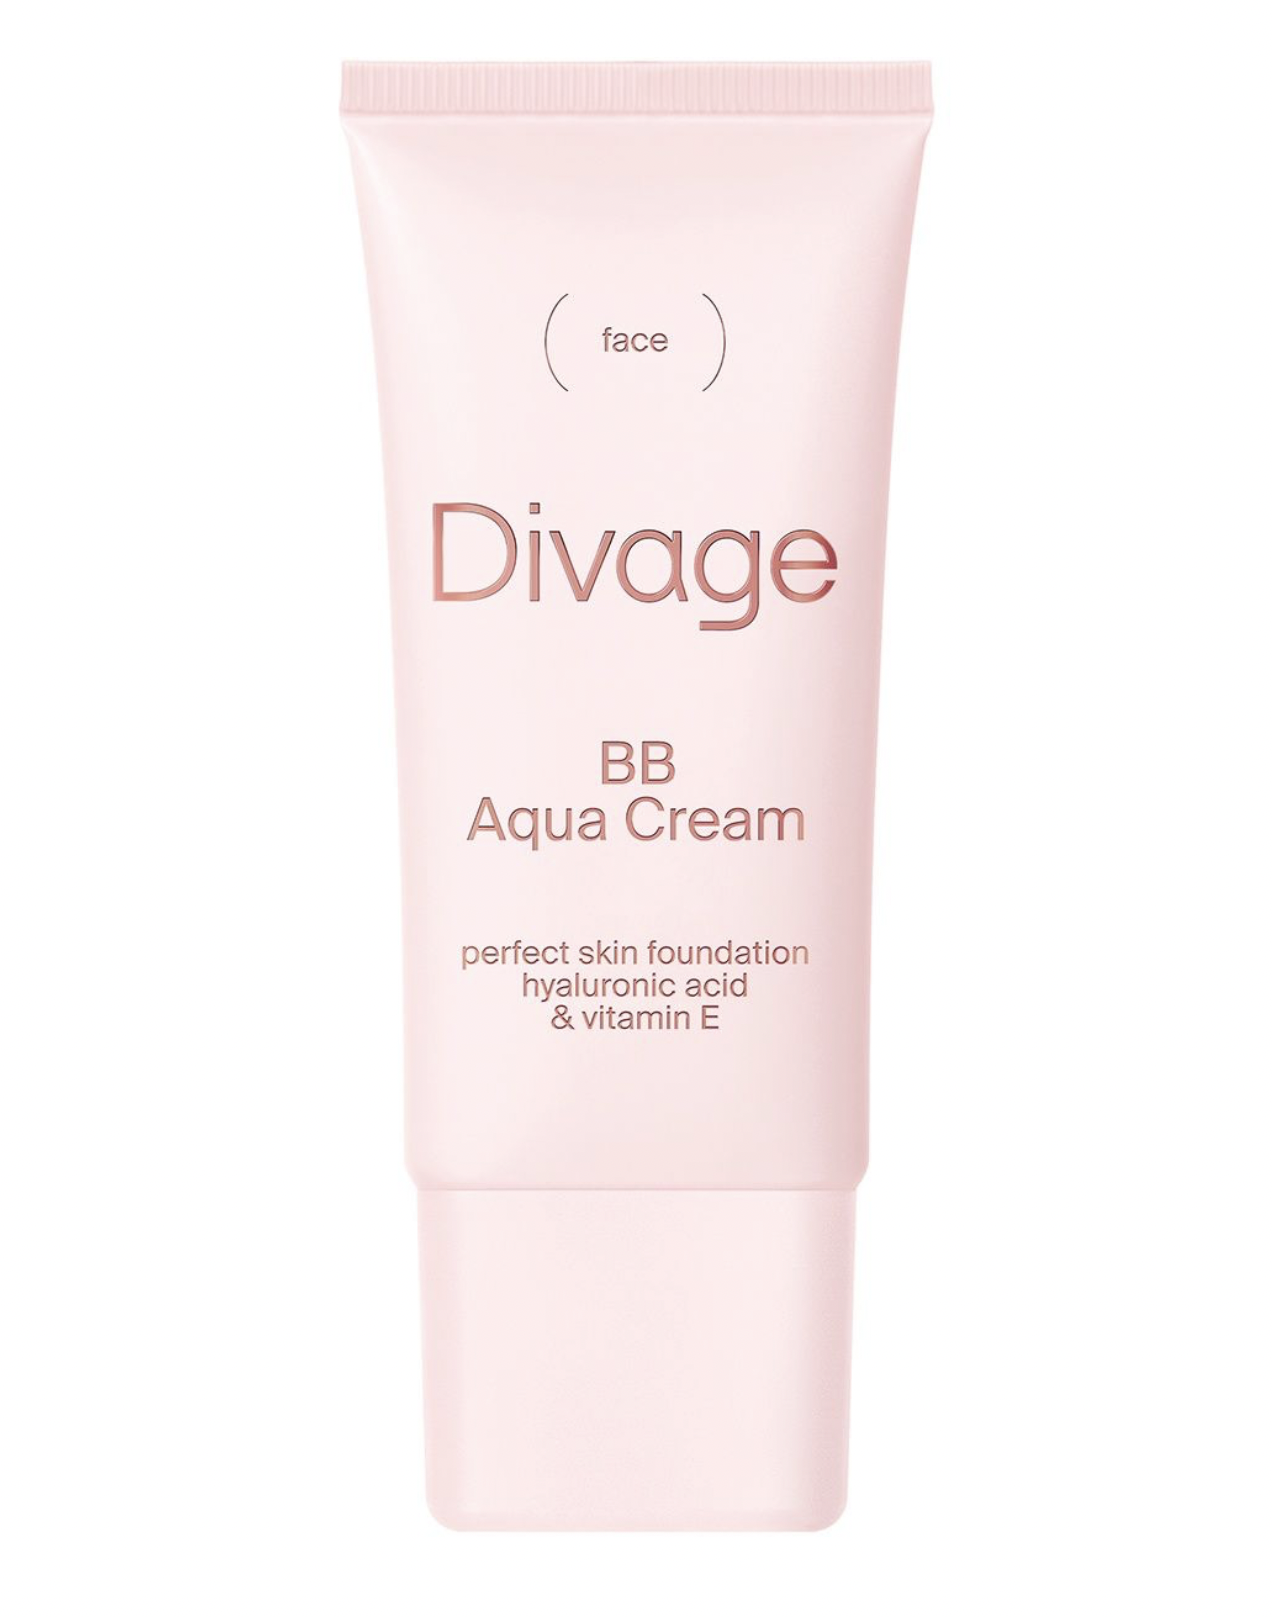   / Divage -     BB Aqua Cream  03 Nude 25 